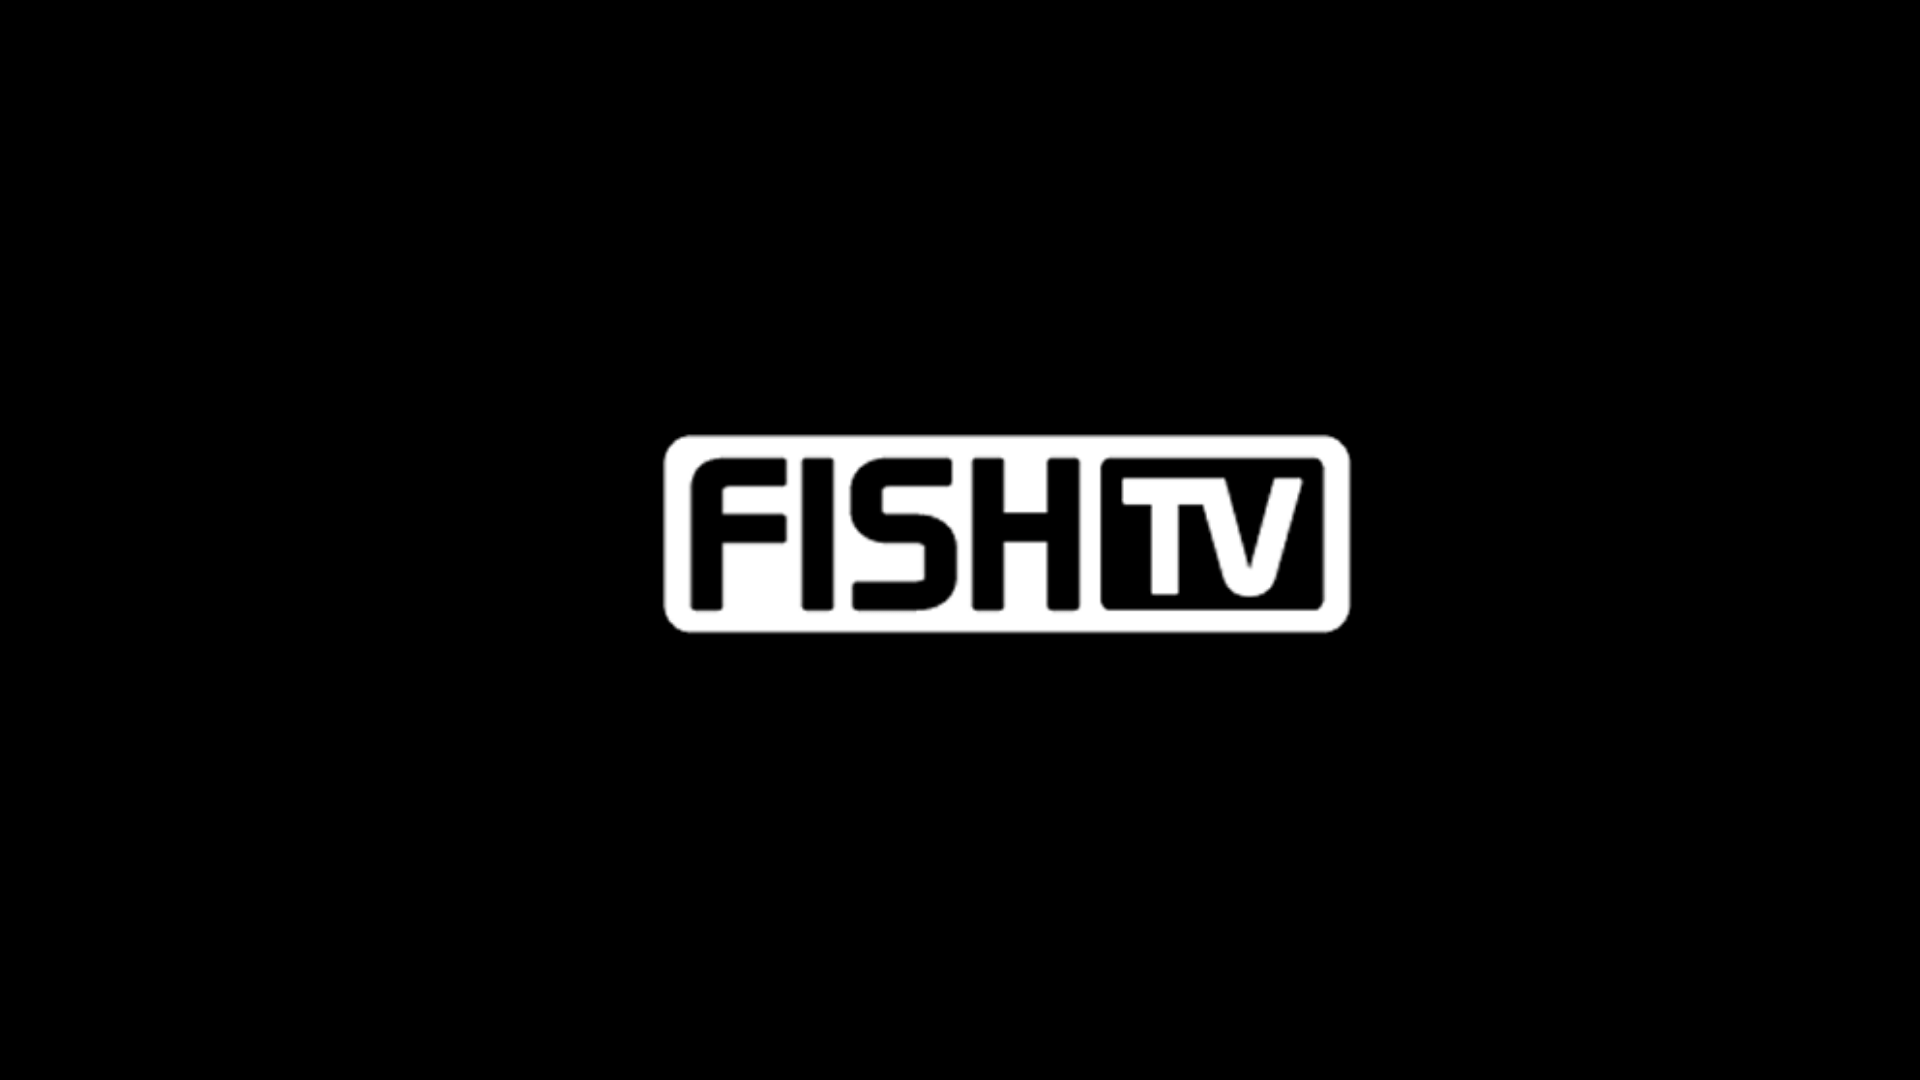 FishTV ao vivo,FishTV online,assistir FishTV,assistir FishTV ao vivo,assistir FishTV online,FishTV gratis,assistir FishTV gratis,ao vivo online,ao vivo gratis,ver FishTV,ver FishTV ao vivo,ver FishTV online,24 horas,24h,multicanais,piratetv,piratatvs.com